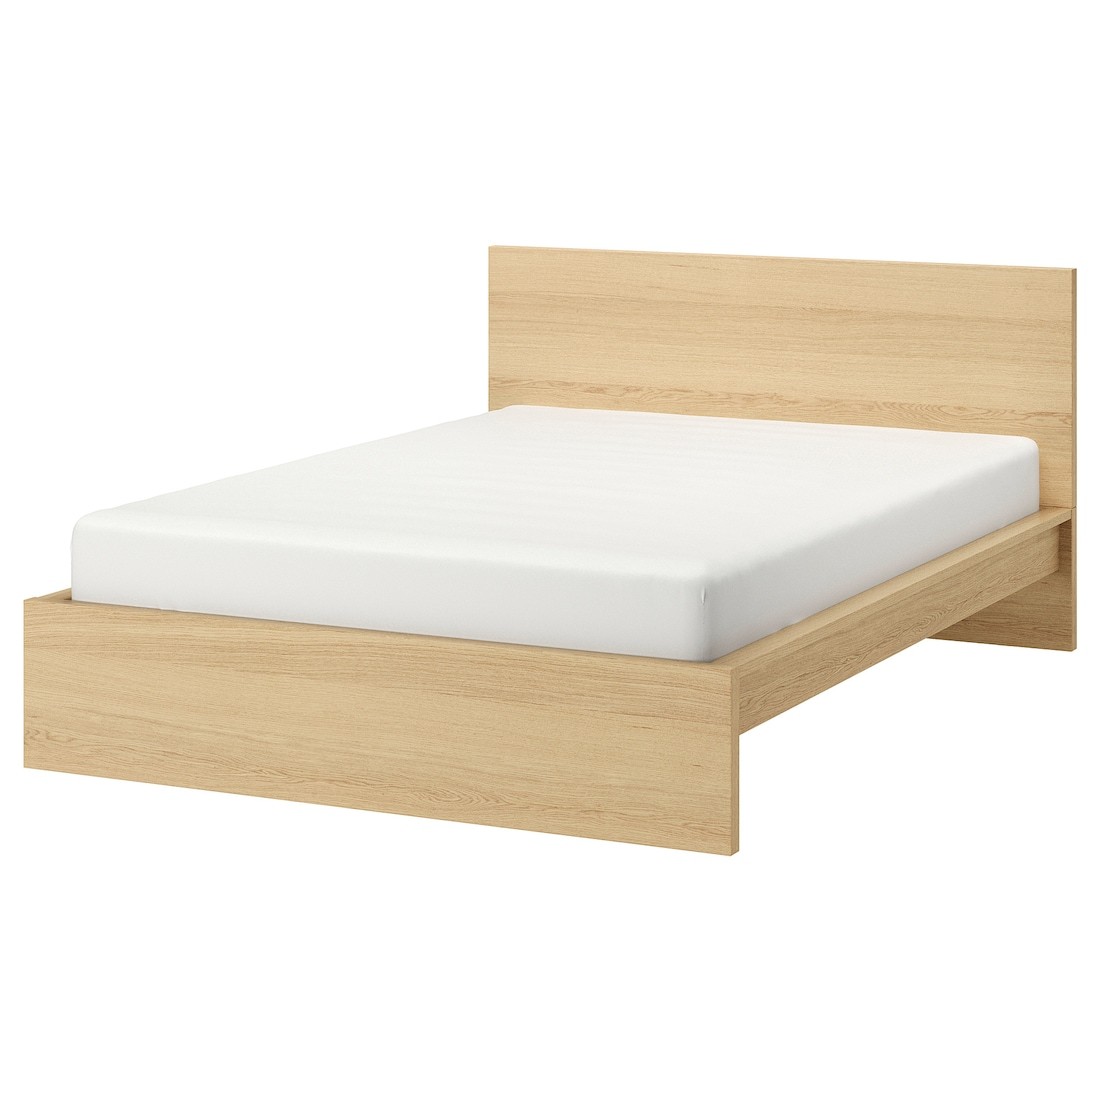 IKEA MALM МАЛЬМ Ліжко двоспальне, високе, шпон дуба білений / Luröy, 180x200 см 99027393 990.273.93